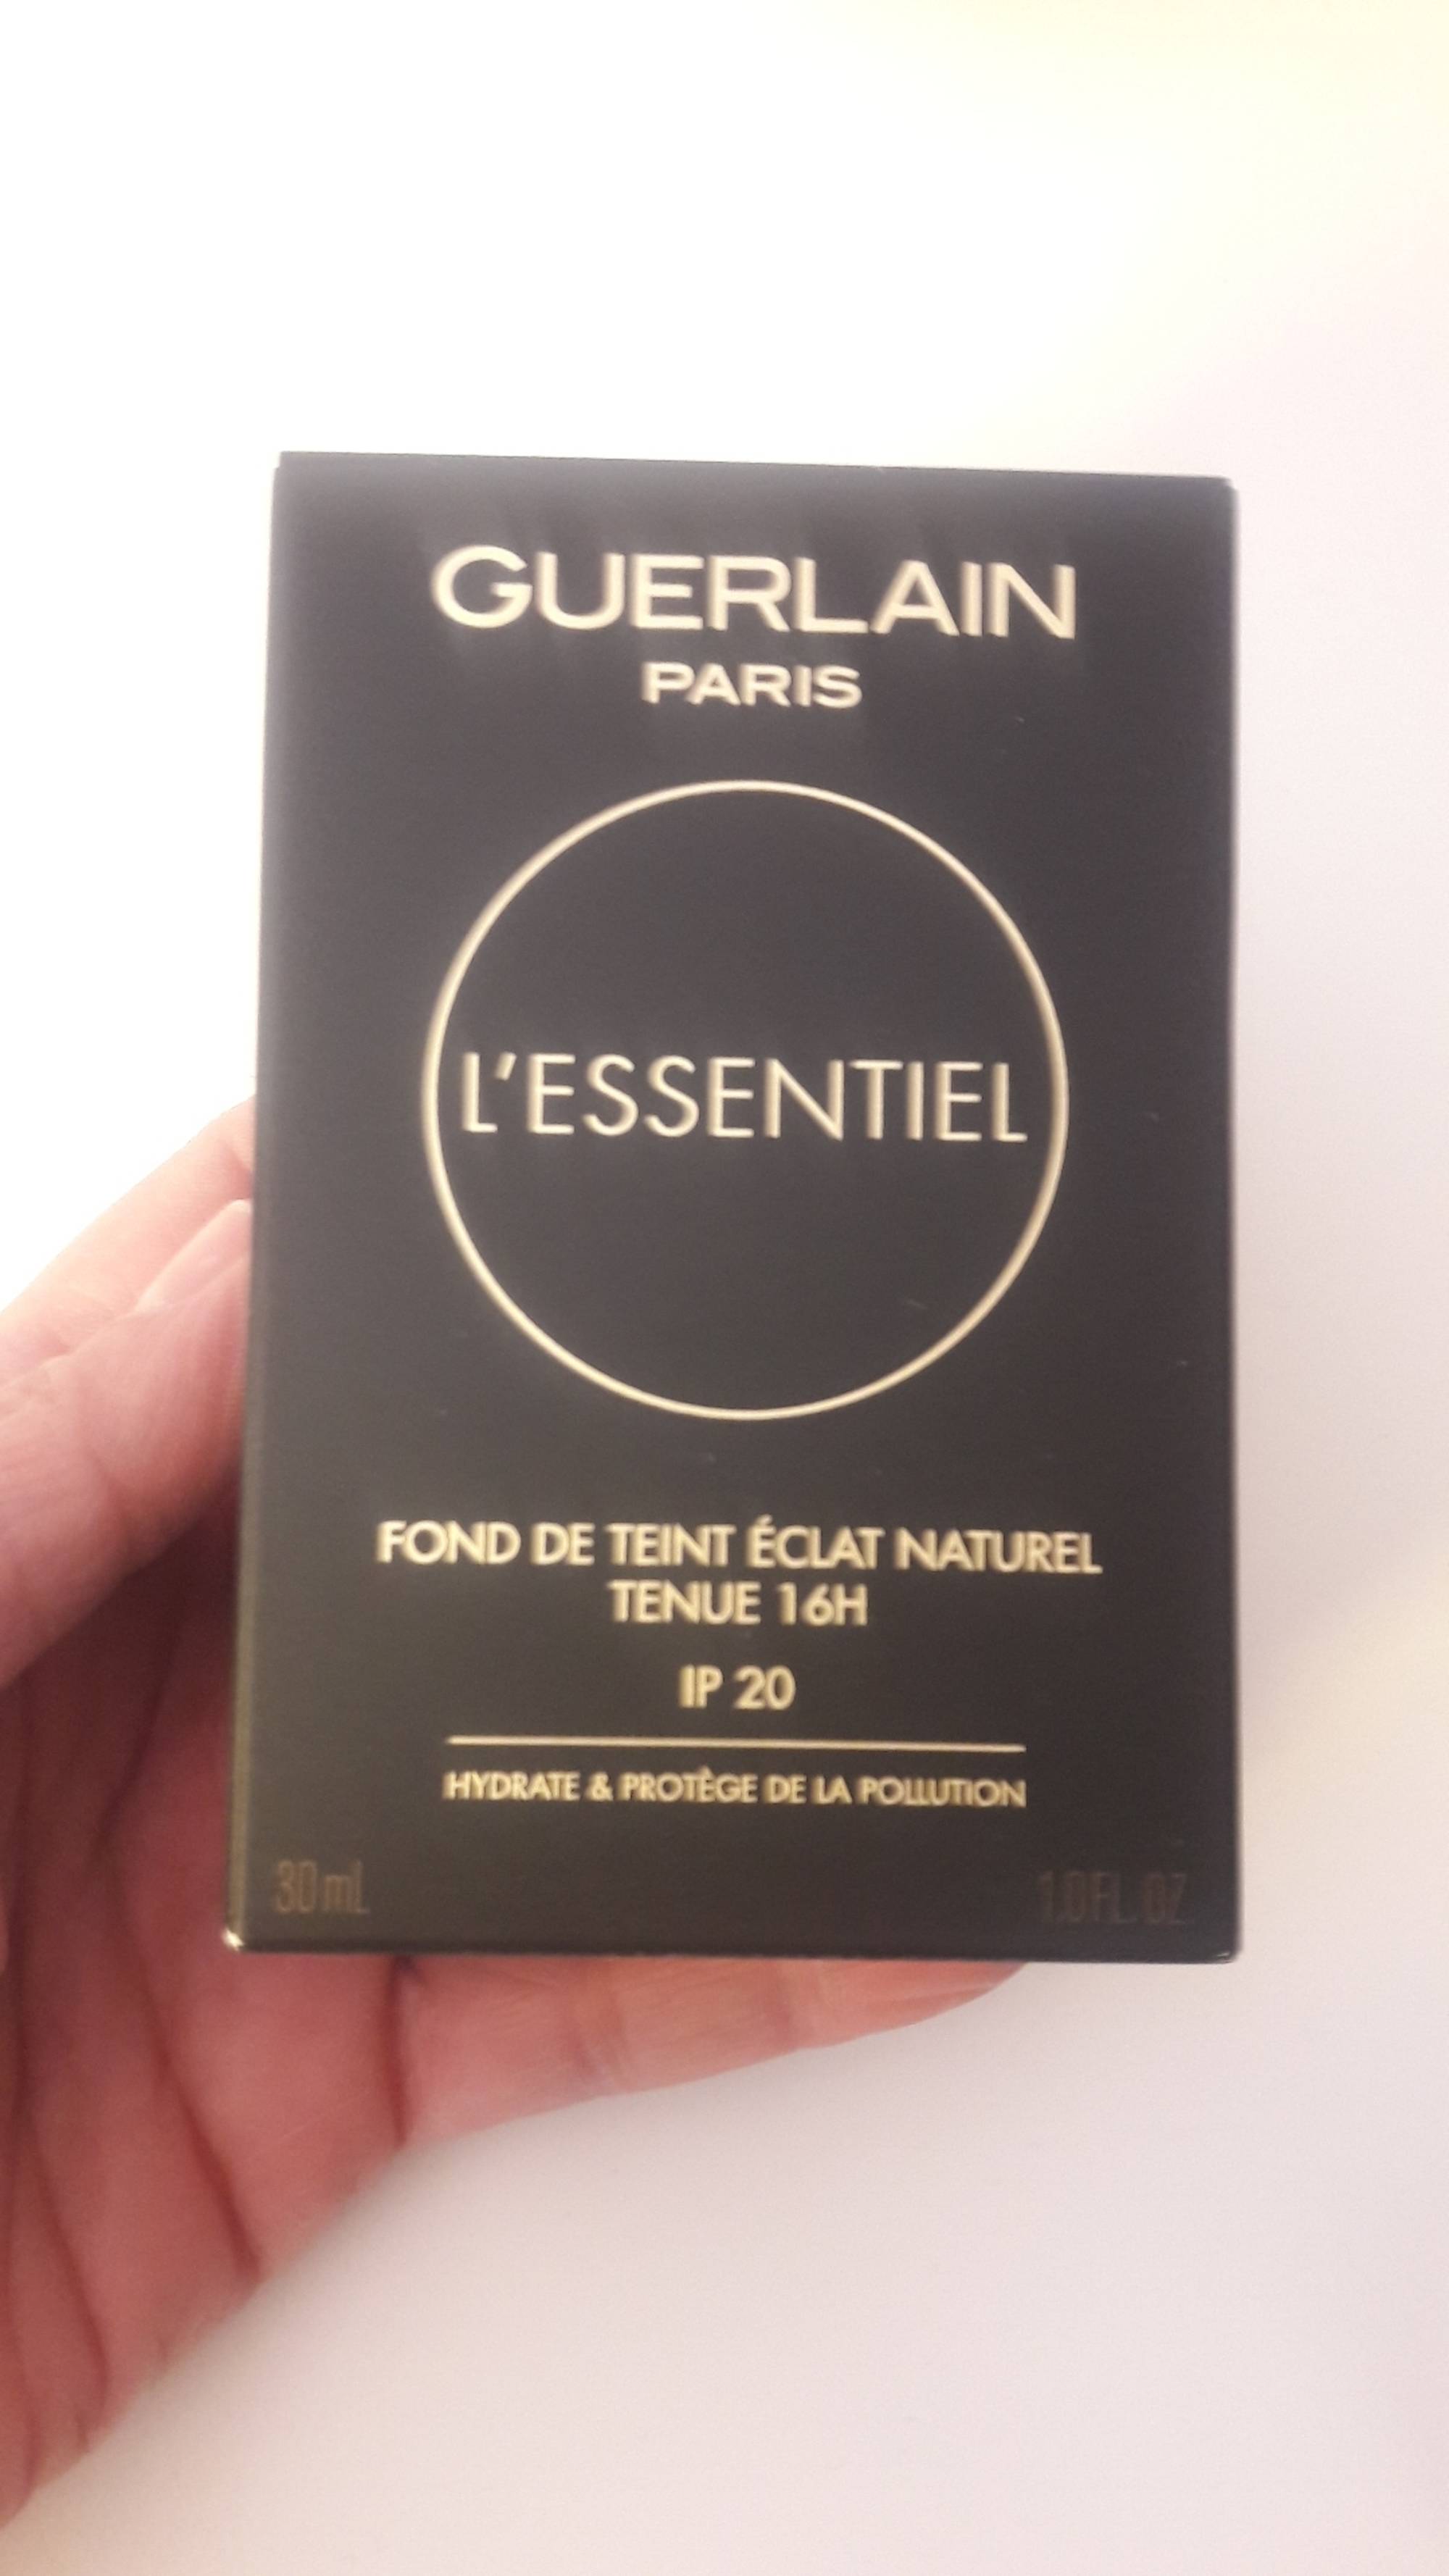 GUERLAIN - L'essentiel - Fond de teint éclat naturel tenue 16h IP 20